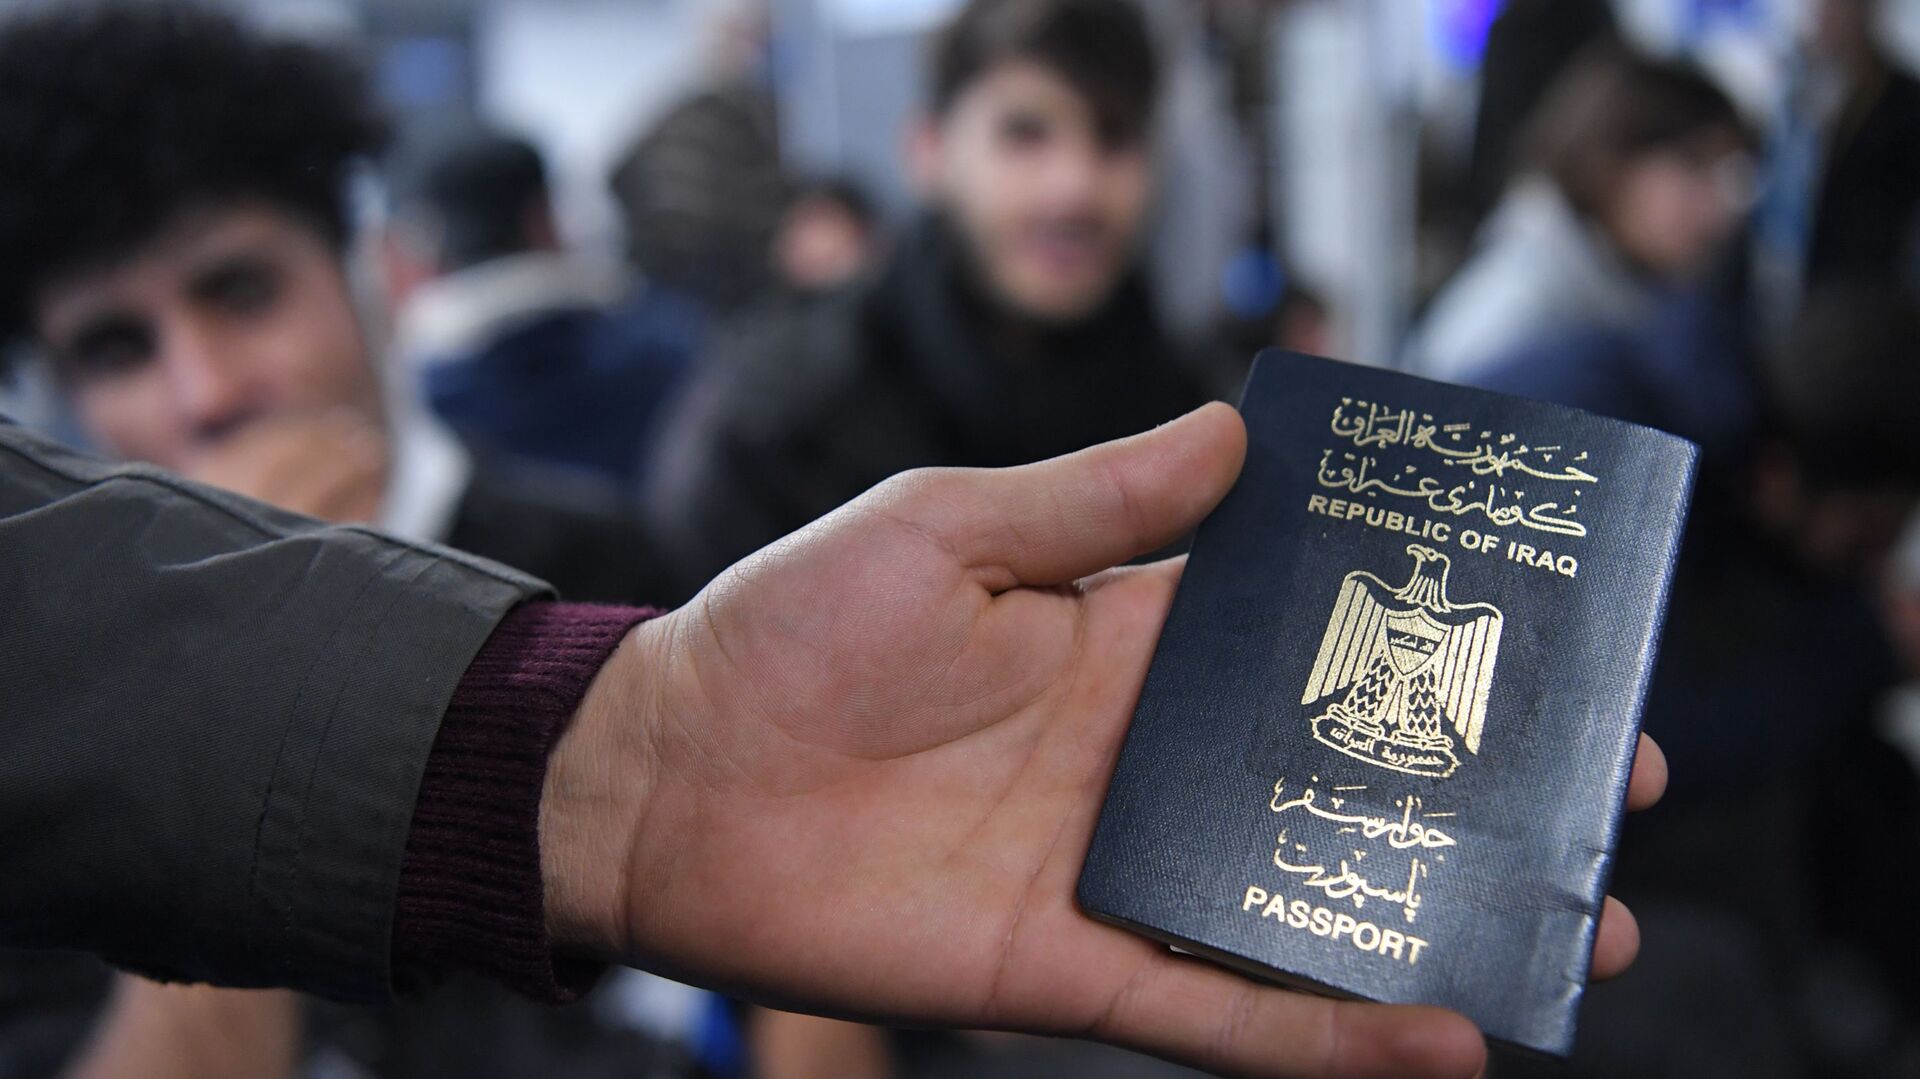 Иракский паспорт в руке одного из беженцев, ожидающих в международном аэропорту Минска вывозных рейсов авиакомпании Iraqi Airways - Sputnik Беларусь, 1920, 15.12.2021